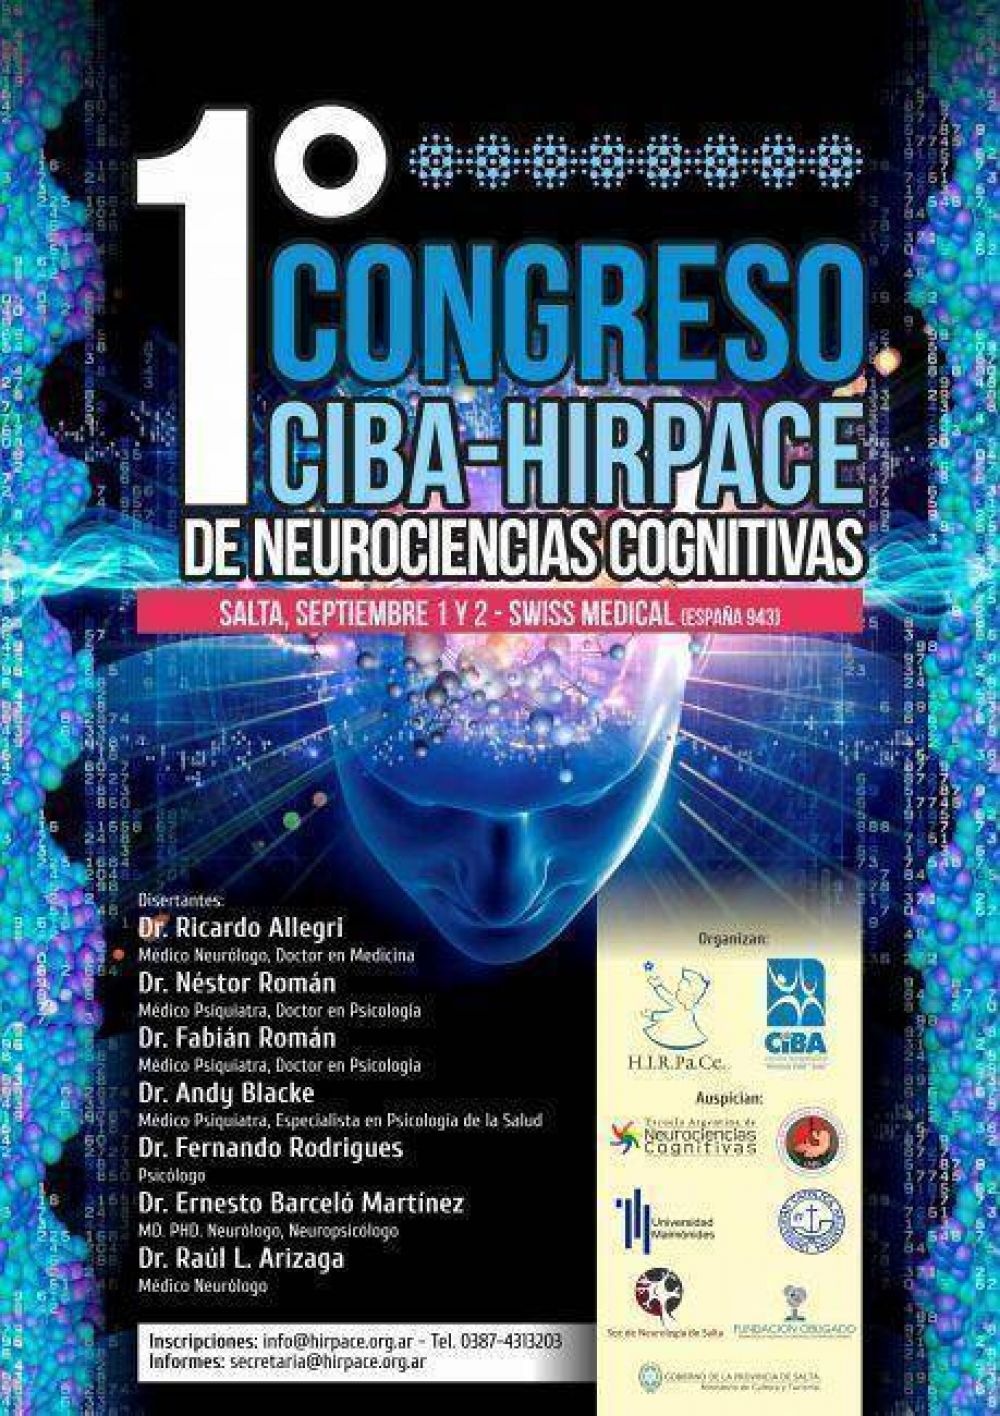 Se realizar en Salta el primer congreso internacional de Neurociencia Cognitiva